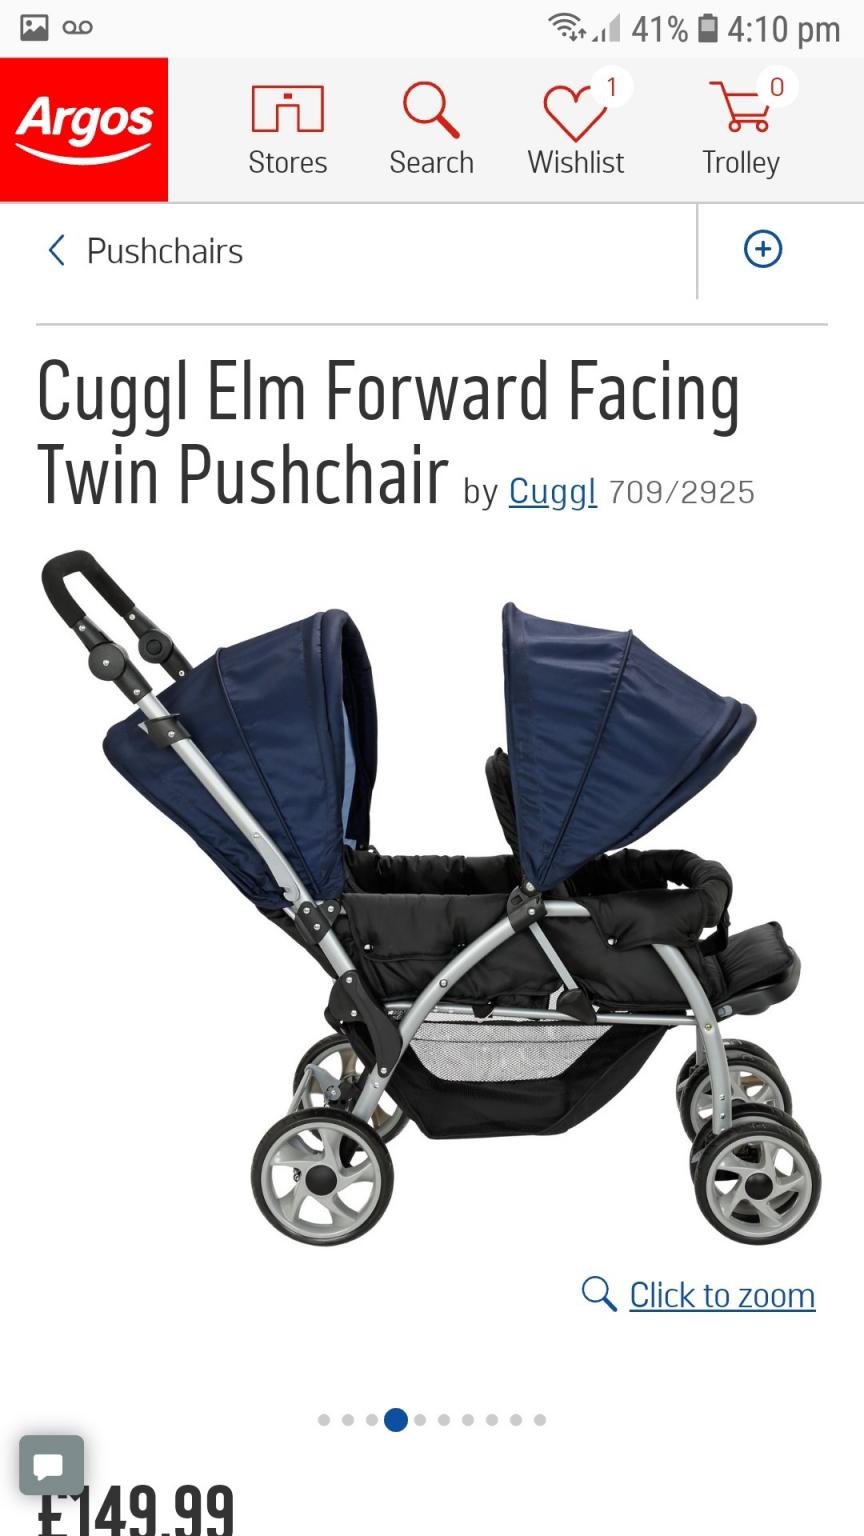 cuggl elm forward facing twin pushchair